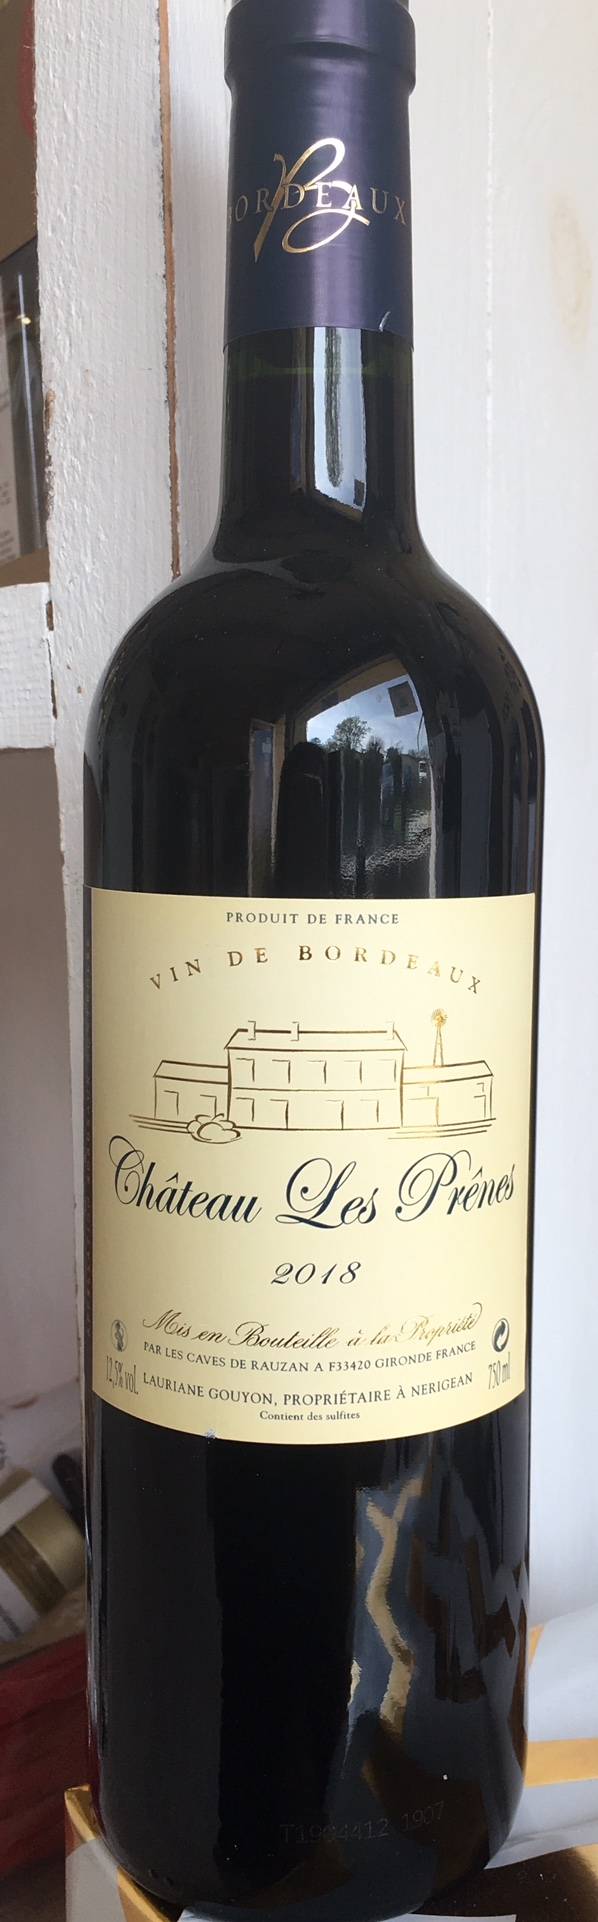 Château Les Prênes : Terr'a Safran, safranier et viticulteur à Nérigean proche Bordeaux